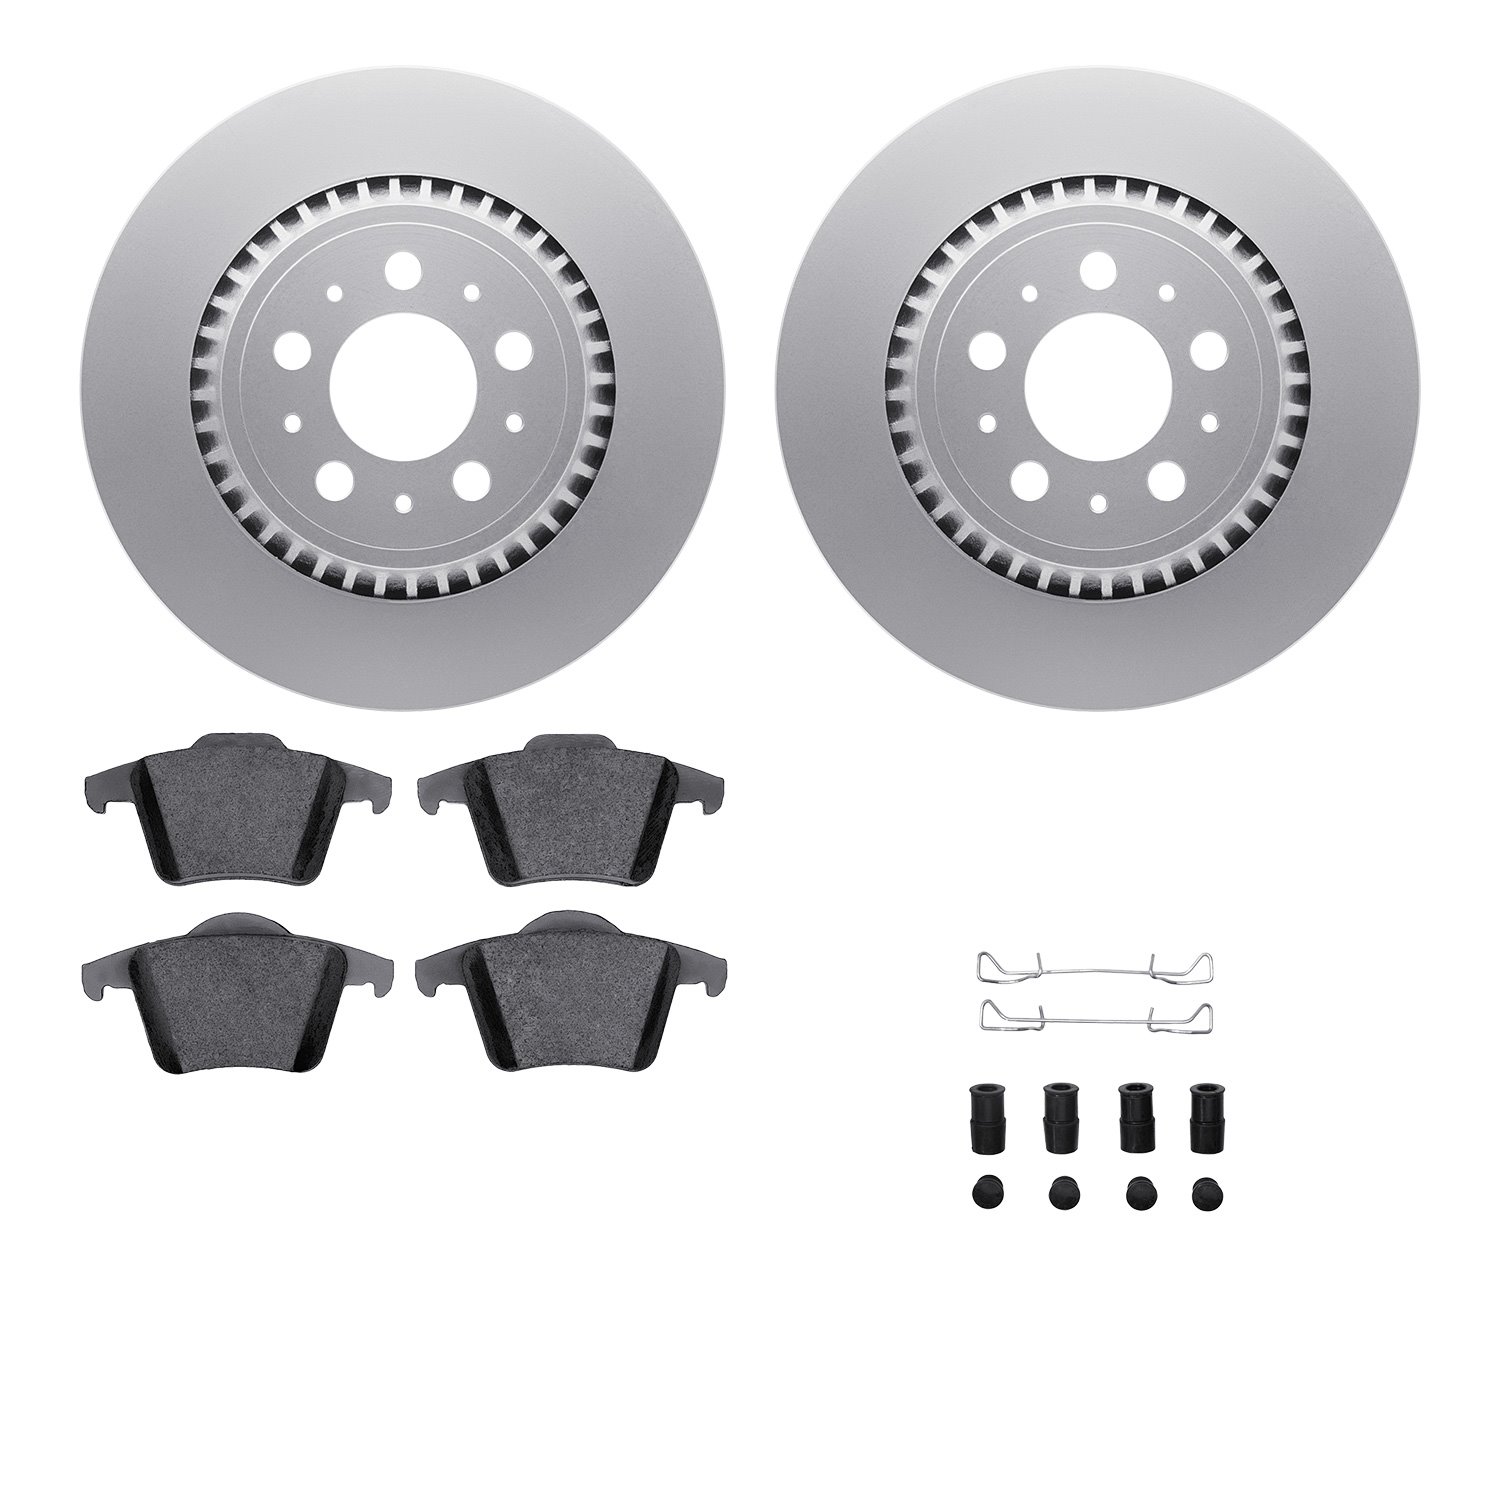 4612-27024 Geospec Brake Rotors w/5000 Euro Ceramic Brake Pads & Hardware, 2003-2014 Volvo, Position: Rear